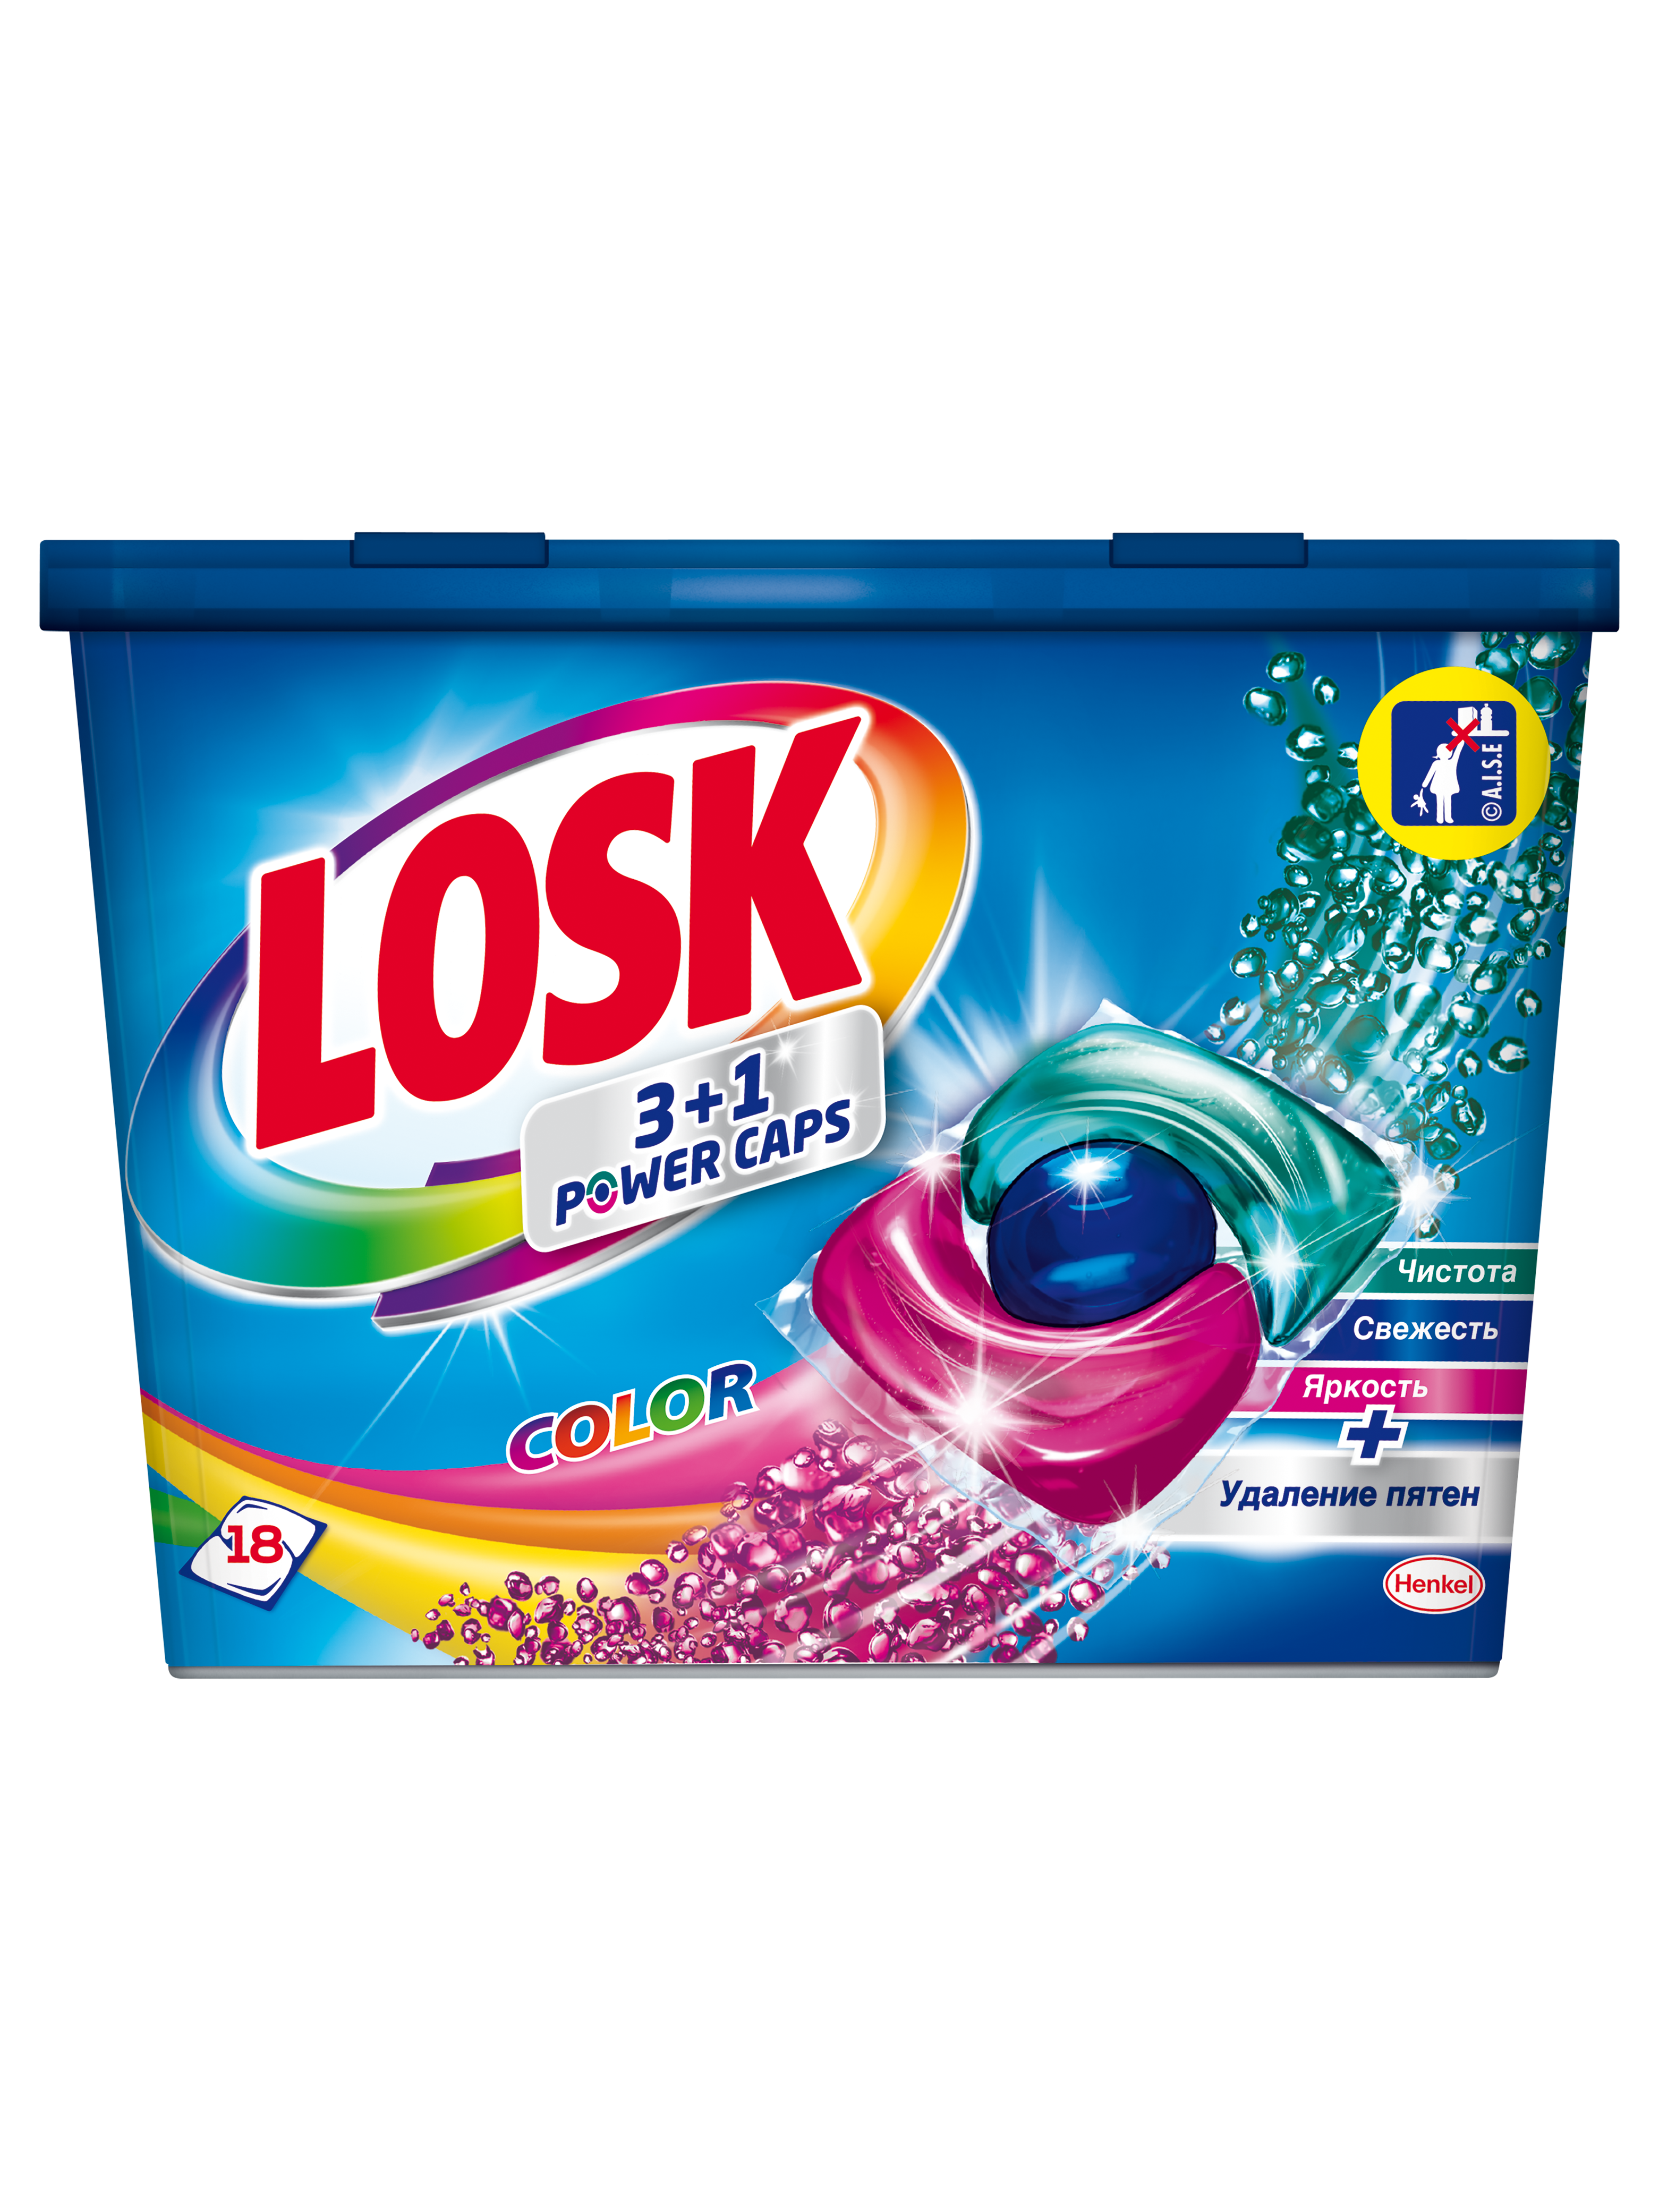 Фото - Пральний порошок Losk Капсули для прання  3 в 1 Color, 18 шт. 